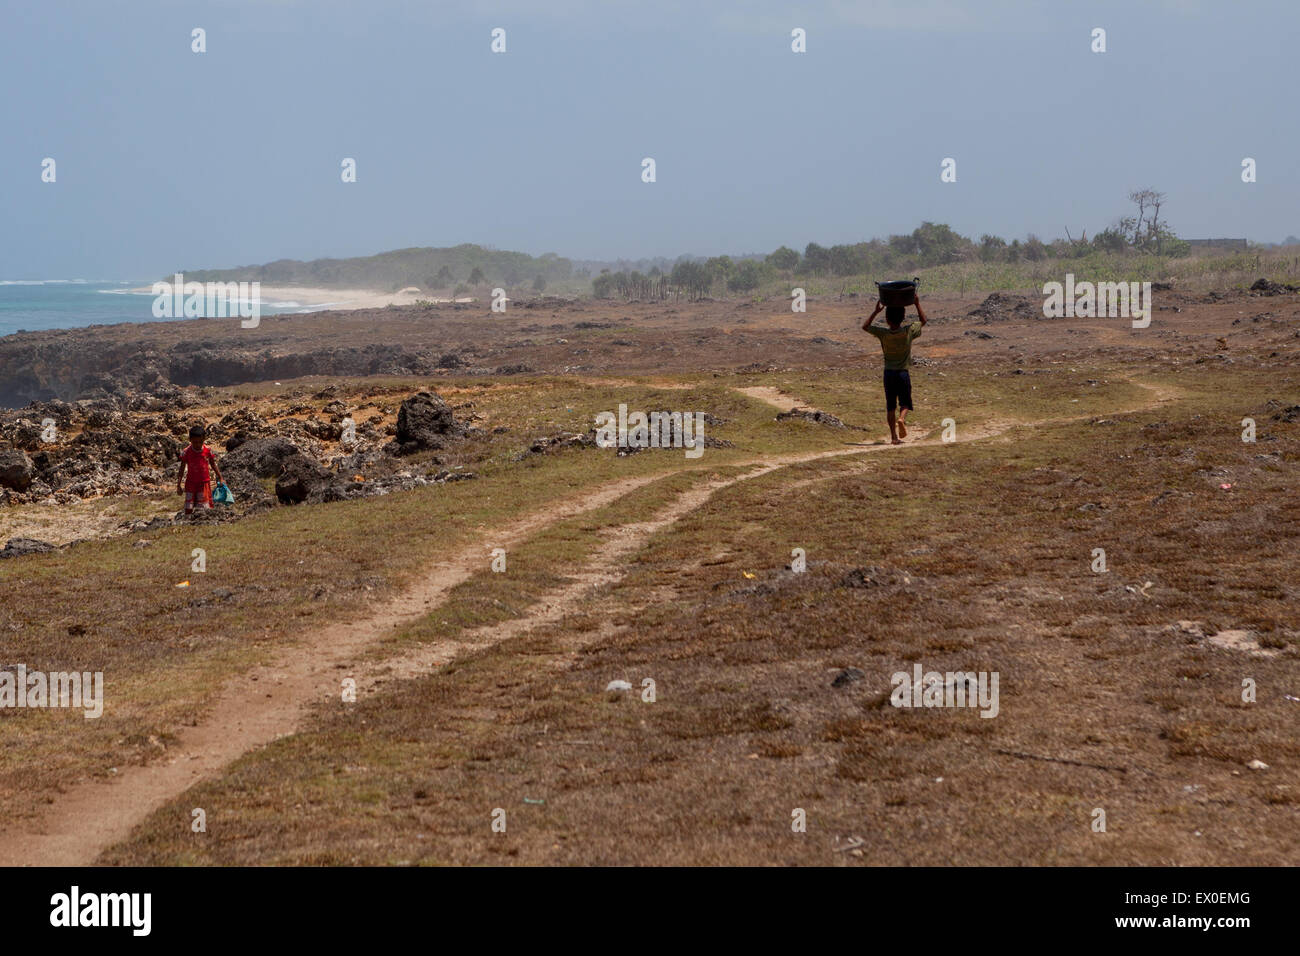 Ein Kind, das einen Plastikeimer auf dem Kopf trägt, während er auf trockenem Gelände in Pero, Dorf Pero Batang, Kodi, Südwest-Sumba, Indonesien, läuft. Stockfoto